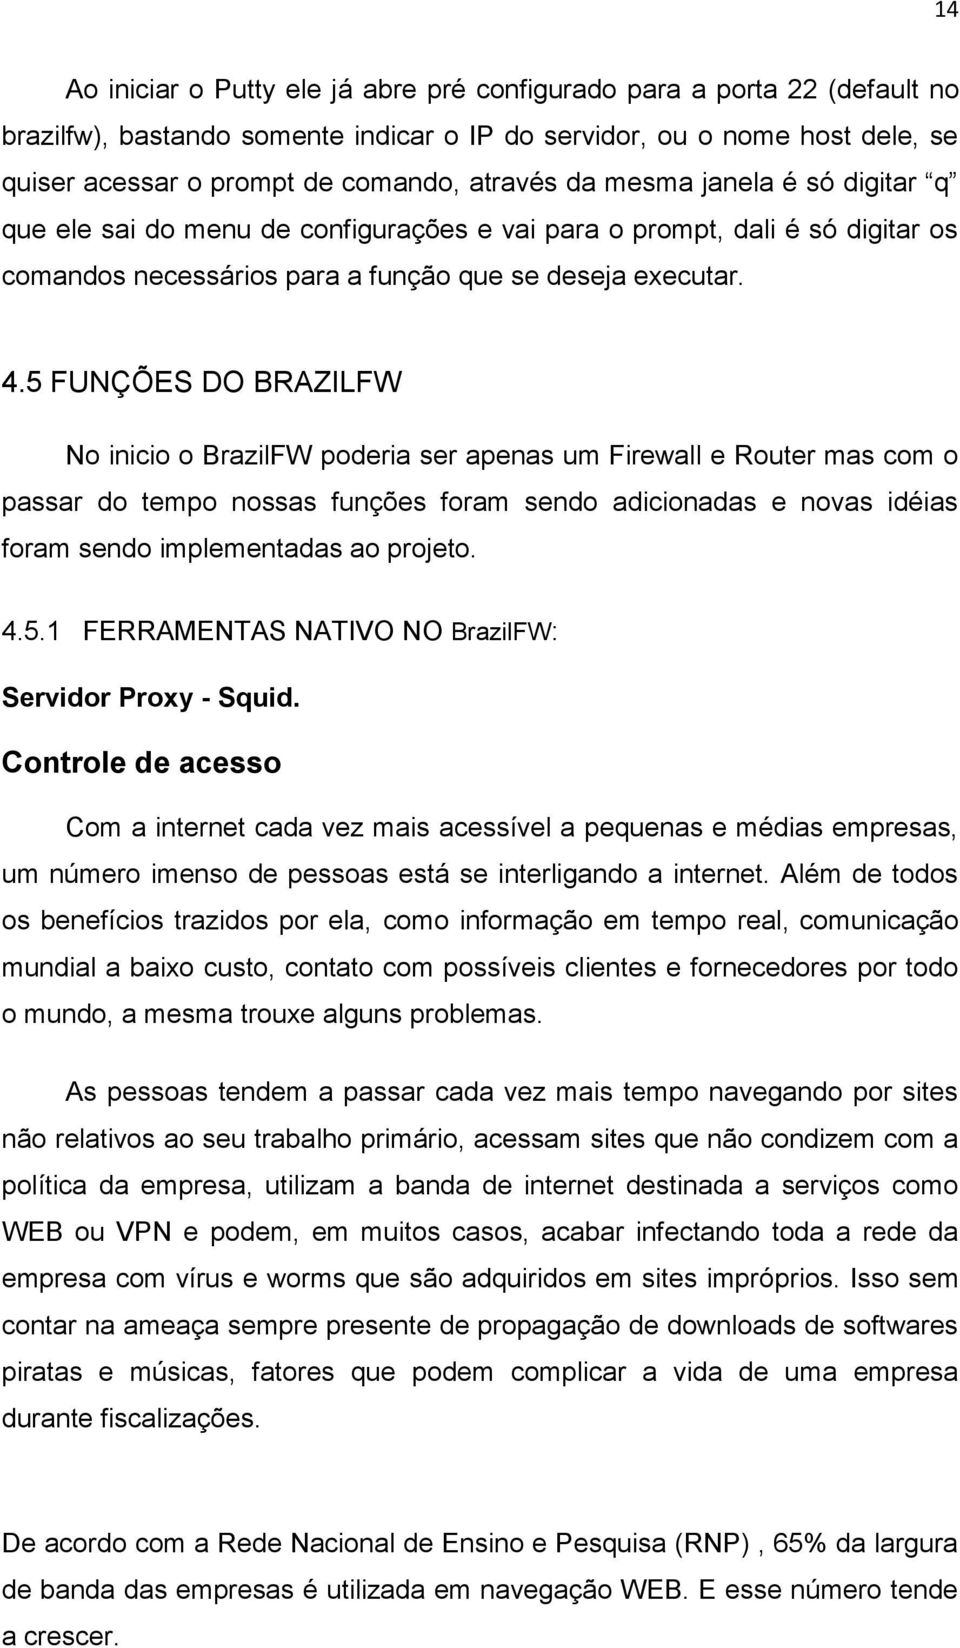 5 FUNÇÕES DO BRAZILFW N inici BrazilFW pderia ser apenas um Firewall e Ruter mas cm passar d temp nssas funções fram send adicinadas e nvas idéias fram send implementadas a prjet. 4.5.1 FERRAMENTAS NATIVO NO BrazilFW: Servidr Prxy - Squid.